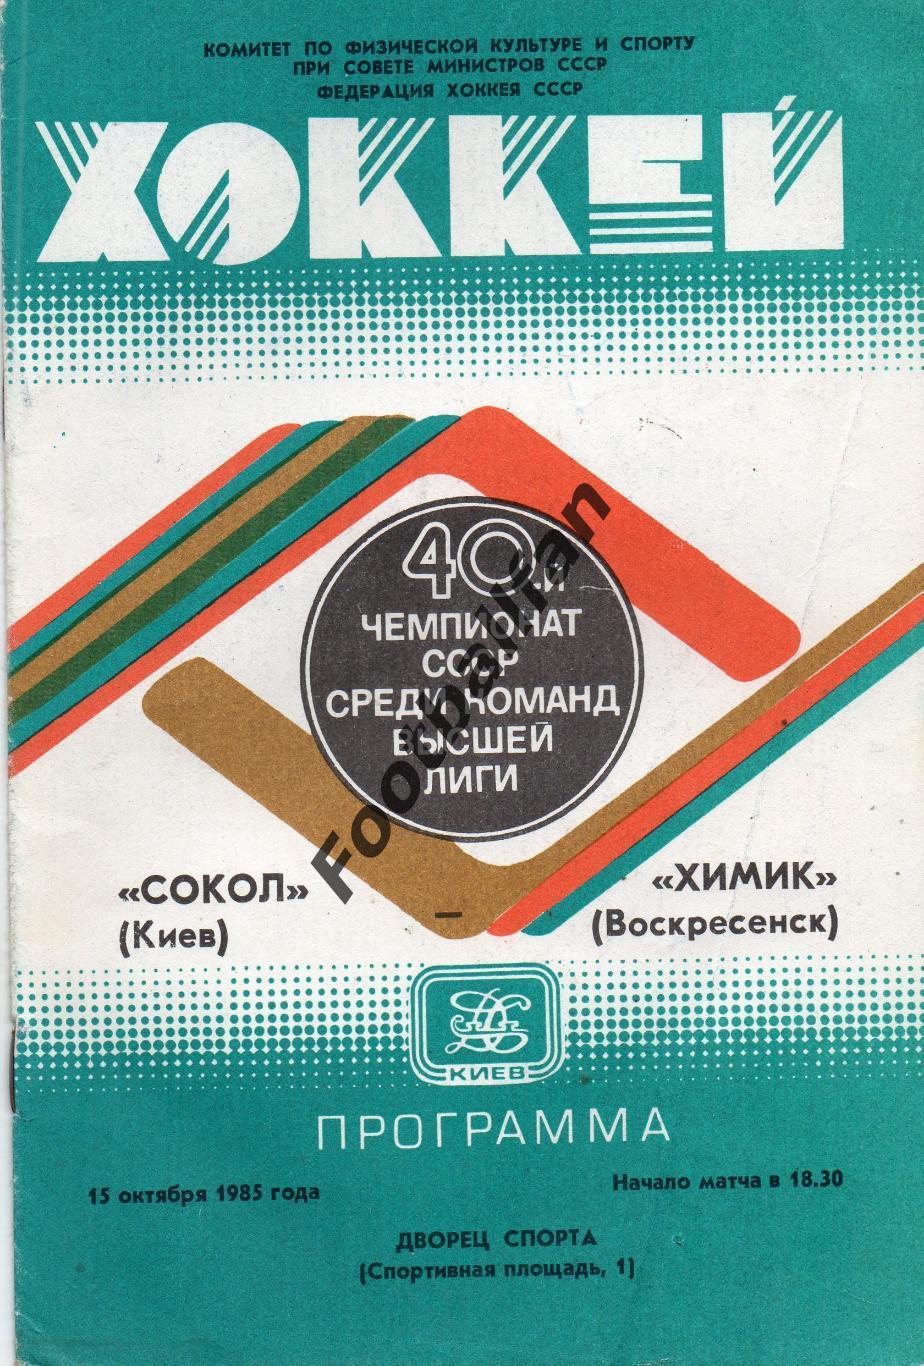 Сокол Киев - Химик Воскресенск 15.10.1985